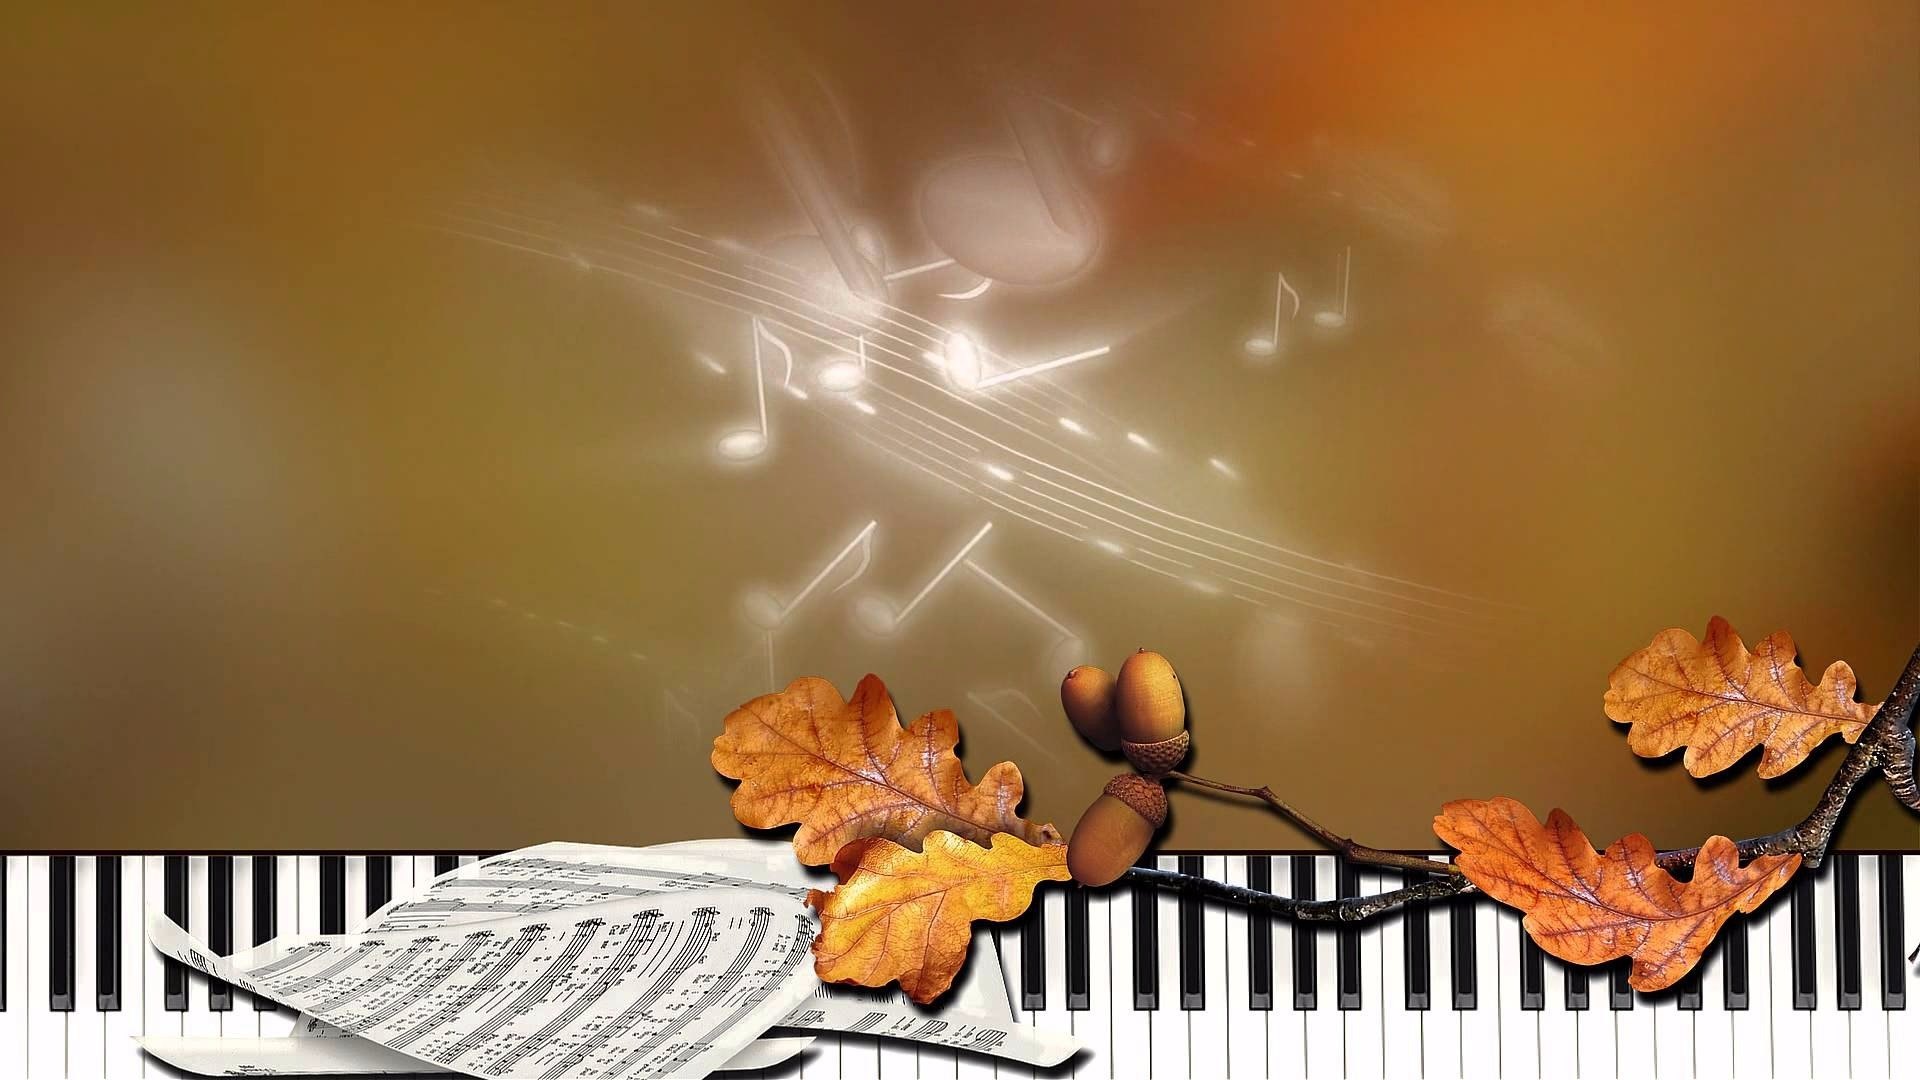 Осенняя мелодия любви содержание чем закончится. Осенний музыкальный фон. Музыкальная осень фон. Осенний фон с нотами. Осень музыка фон для афиши.